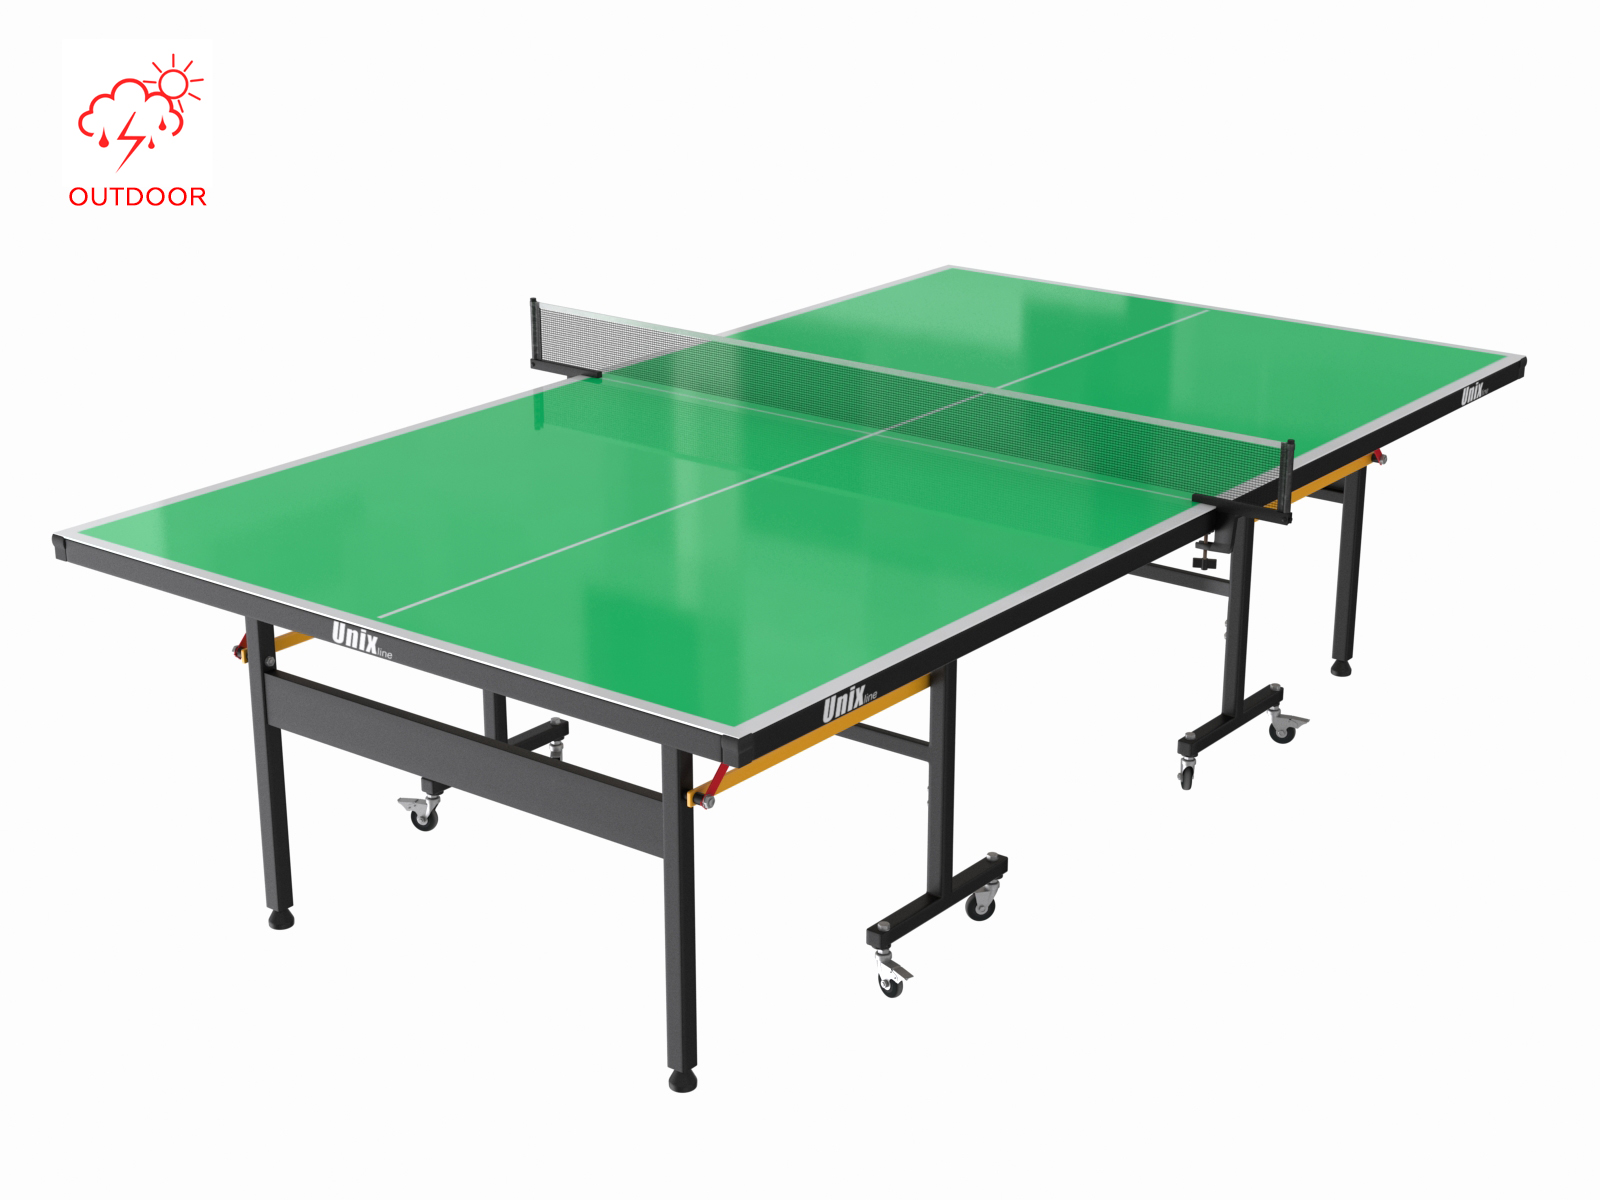 Всепогодный теннисный стол UNIX Line outdoor 6mm (green) - 1 